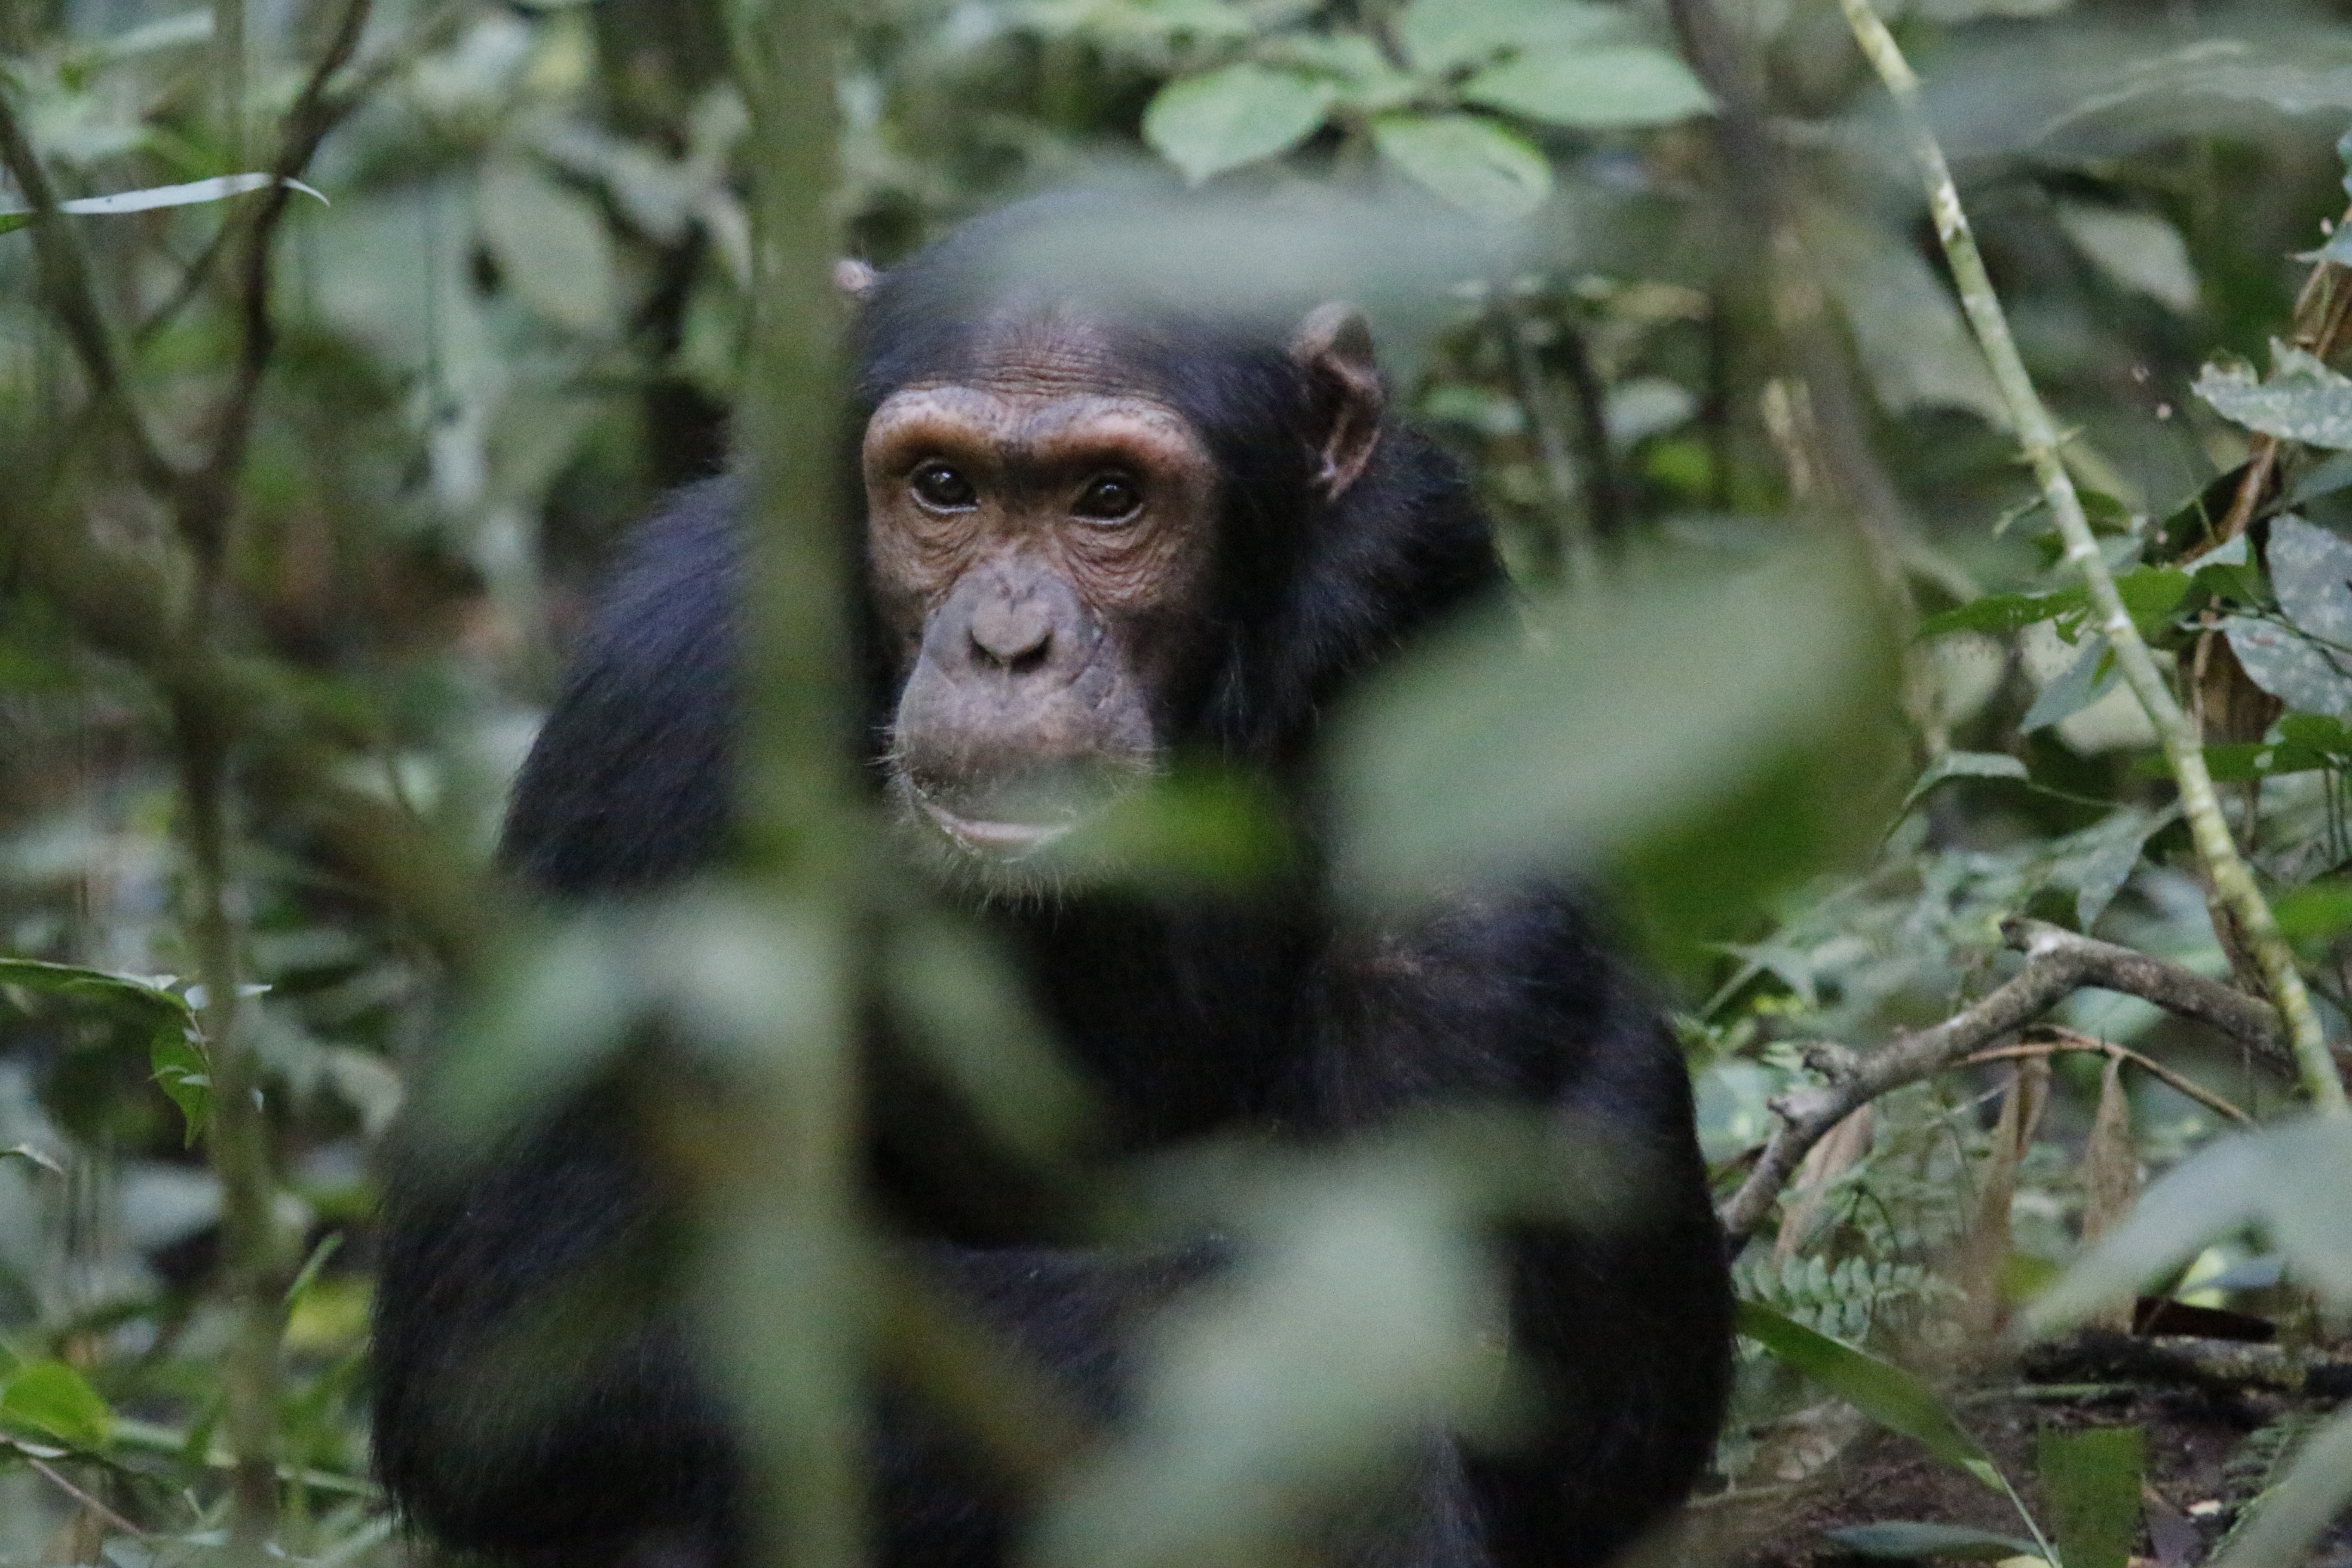 Best time to go trekking Chimps In Uganda